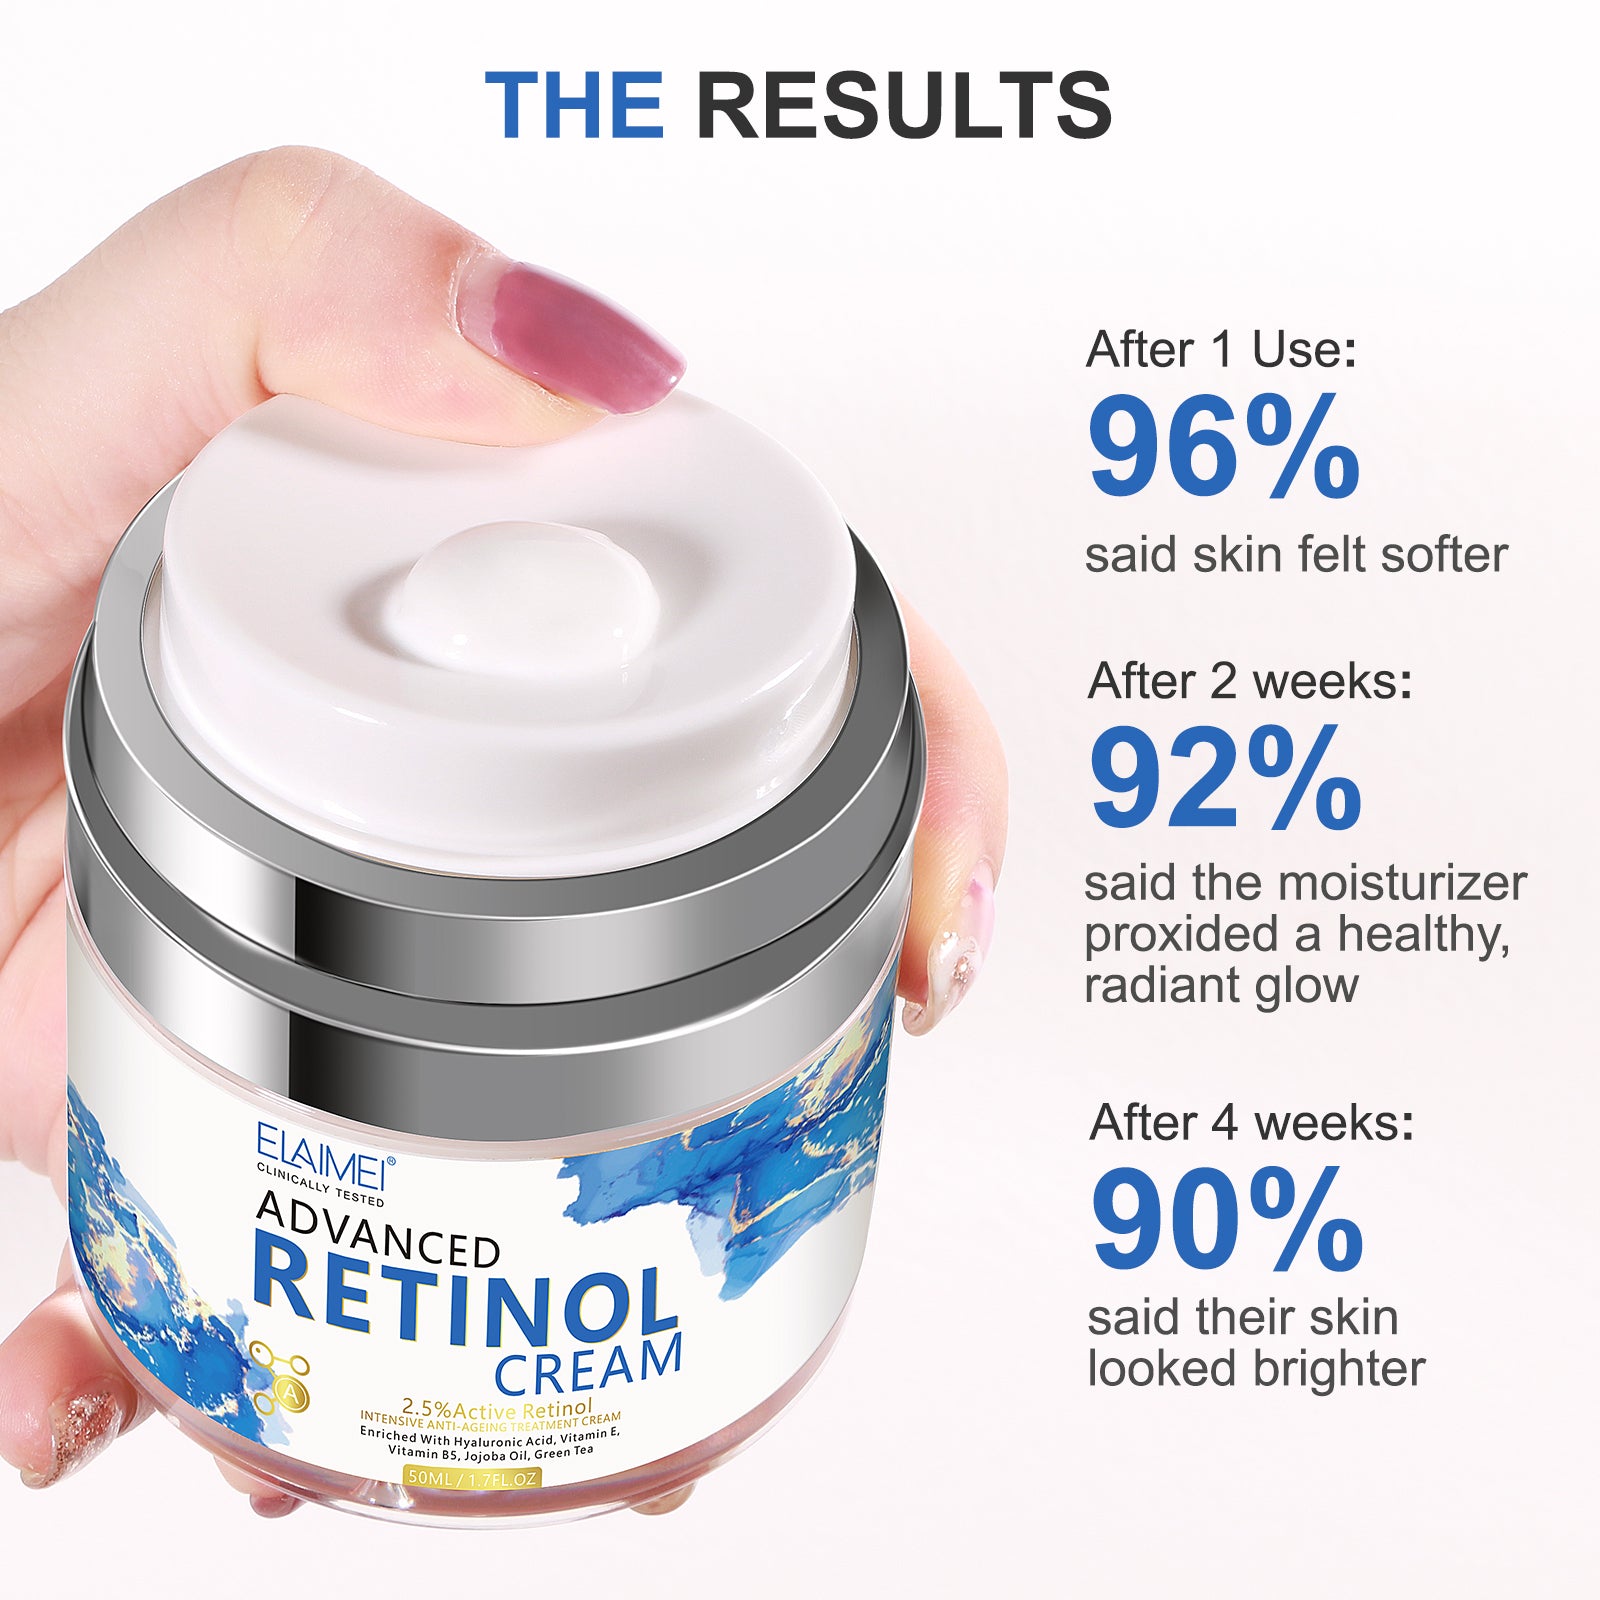 Retinol Cream 1.0, Retinol Face Cream